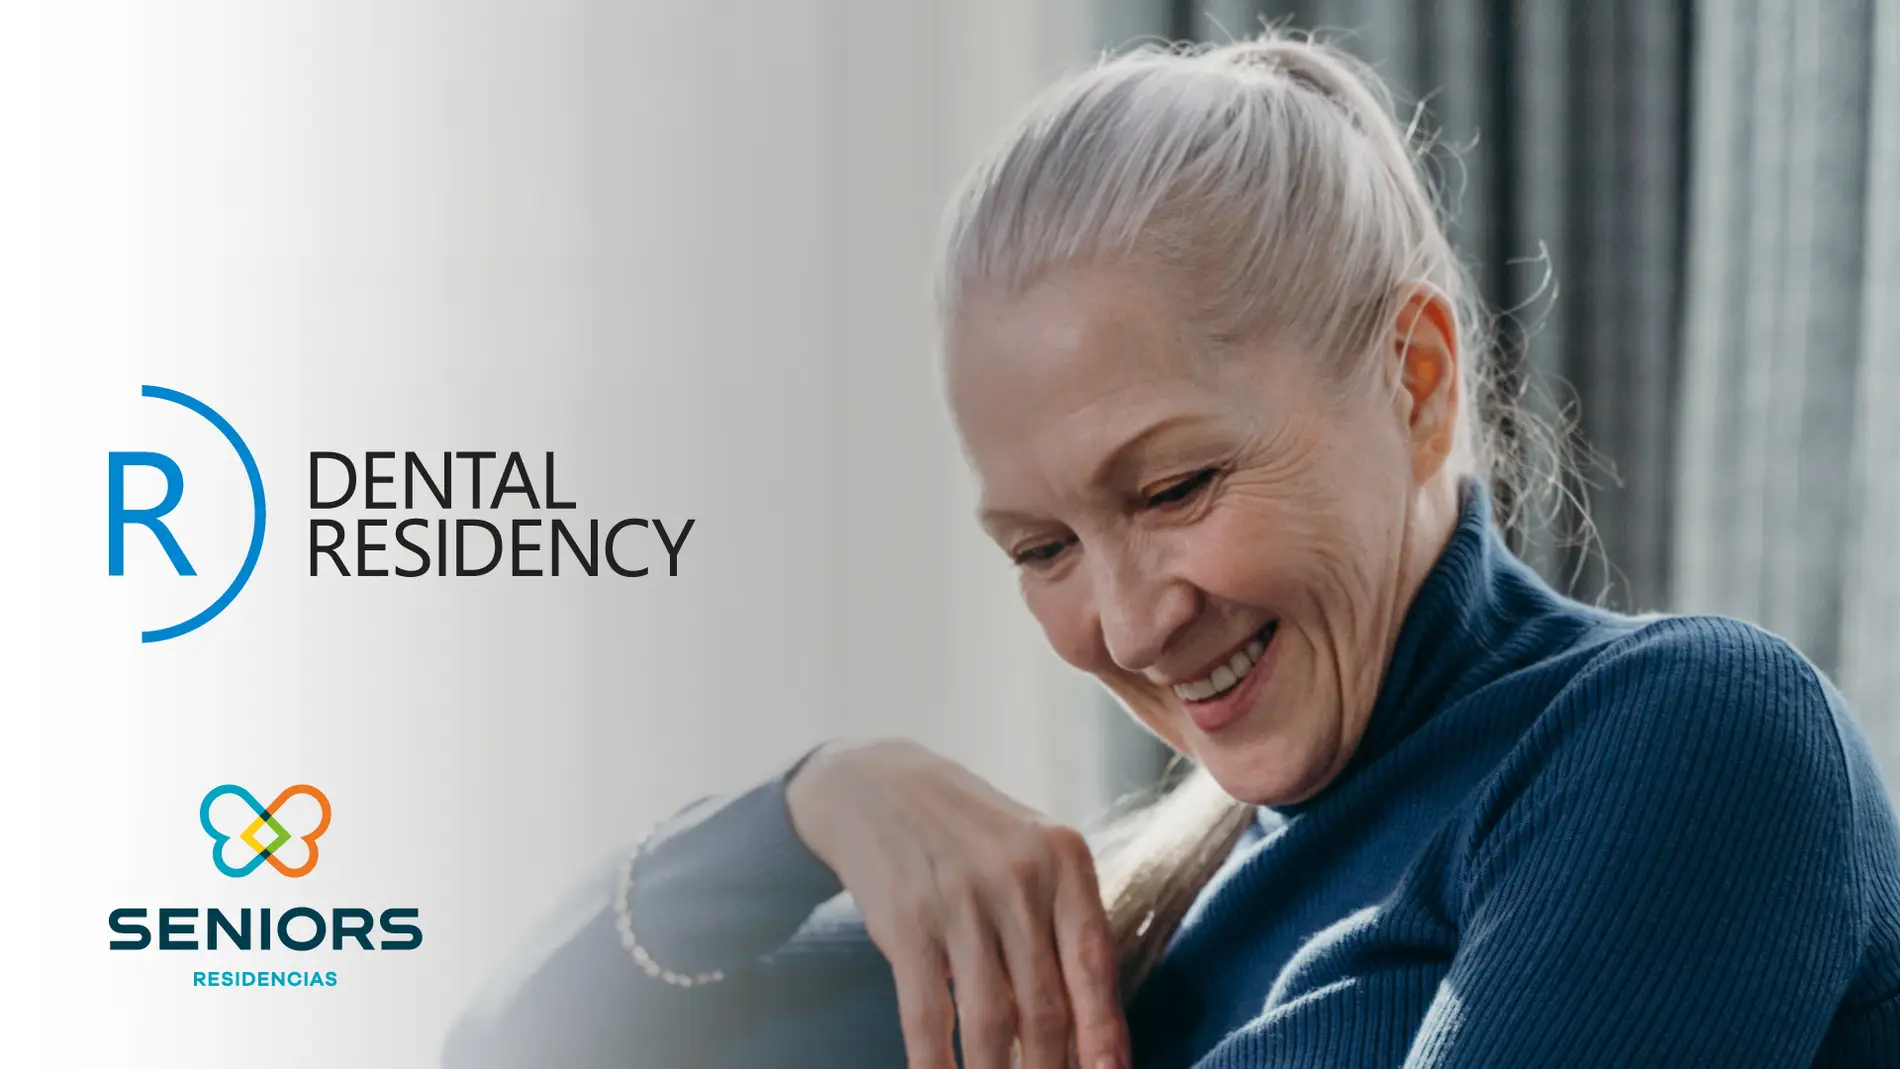 Seniors Residencias y Dental Residency impulsan la salud bucodental de los residentes a nivel nacional